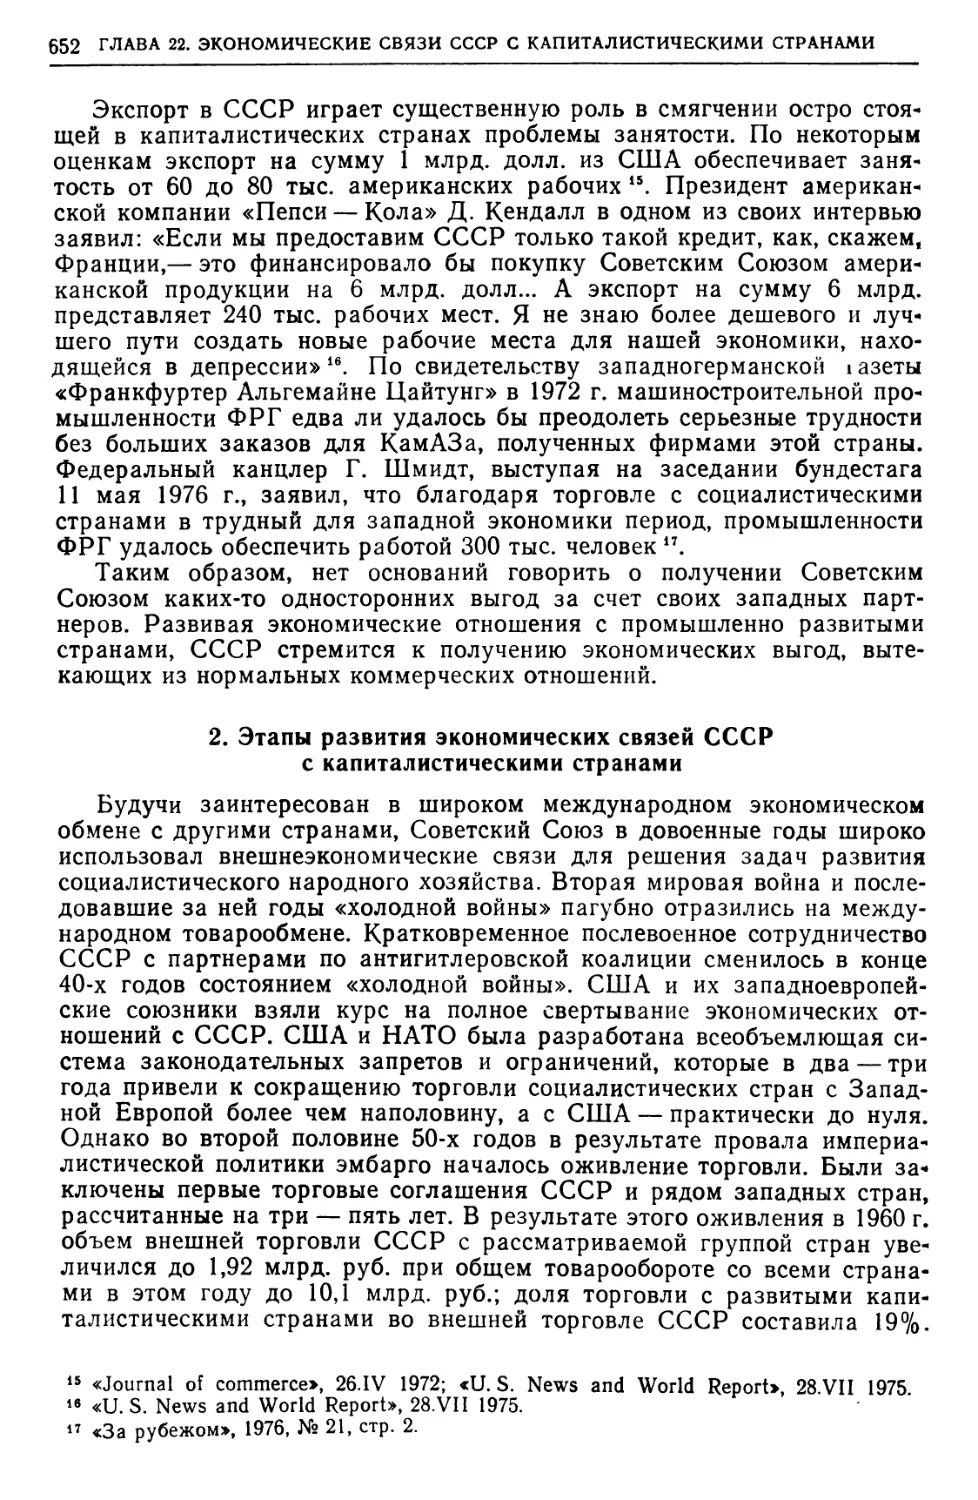 2. Этапы развития экономических связей СССР с капиталистическими странами